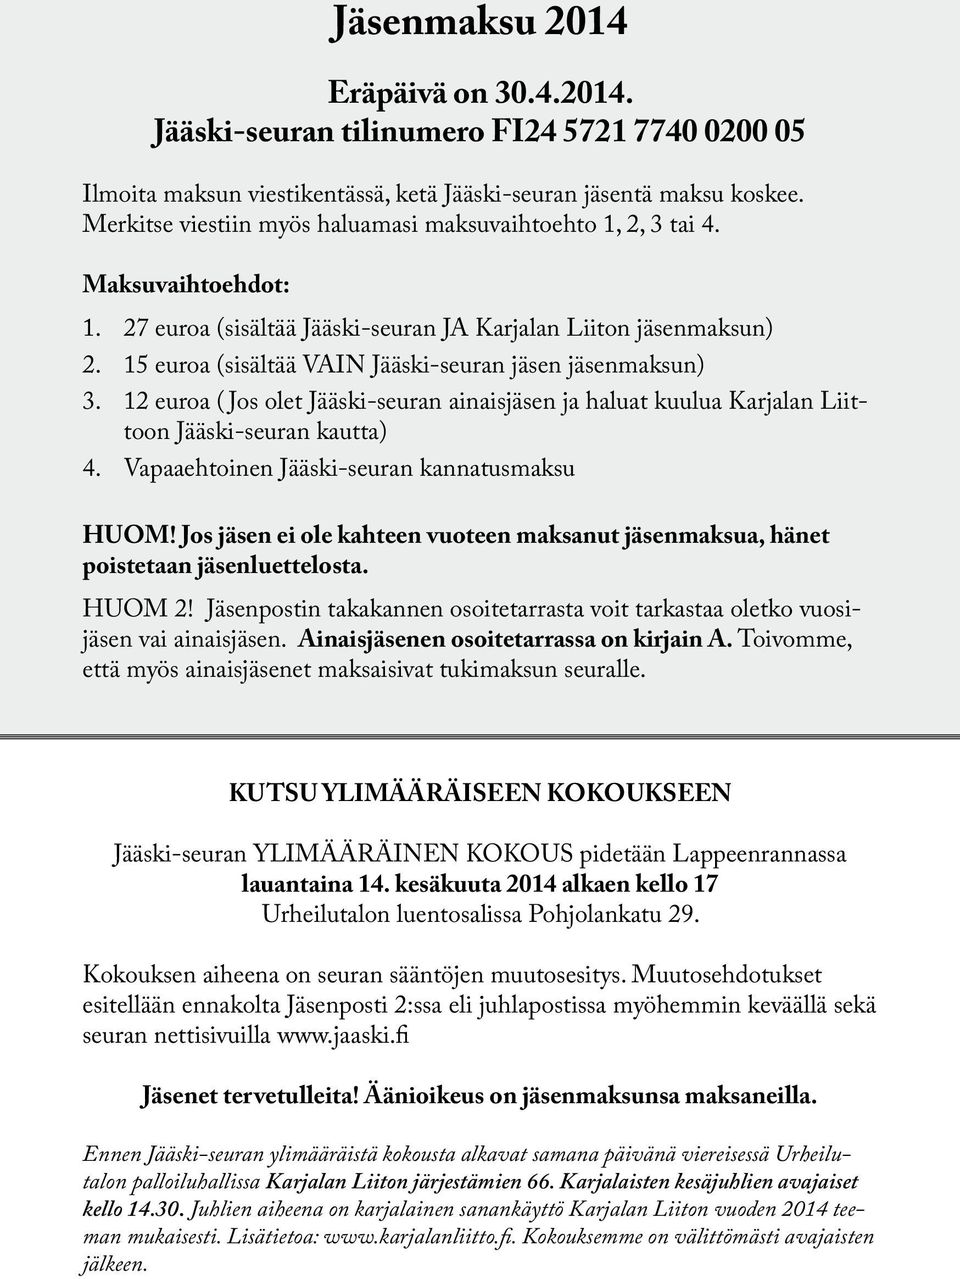 15 euroa (sisältää VAIN Jääski-seuran jäsen jäsenmaksun) 3. 12 euroa ( Jos olet Jääski-seuran ainaisjäsen ja haluat kuulua Karjalan Liittoon Jääski-seuran kautta) 4.